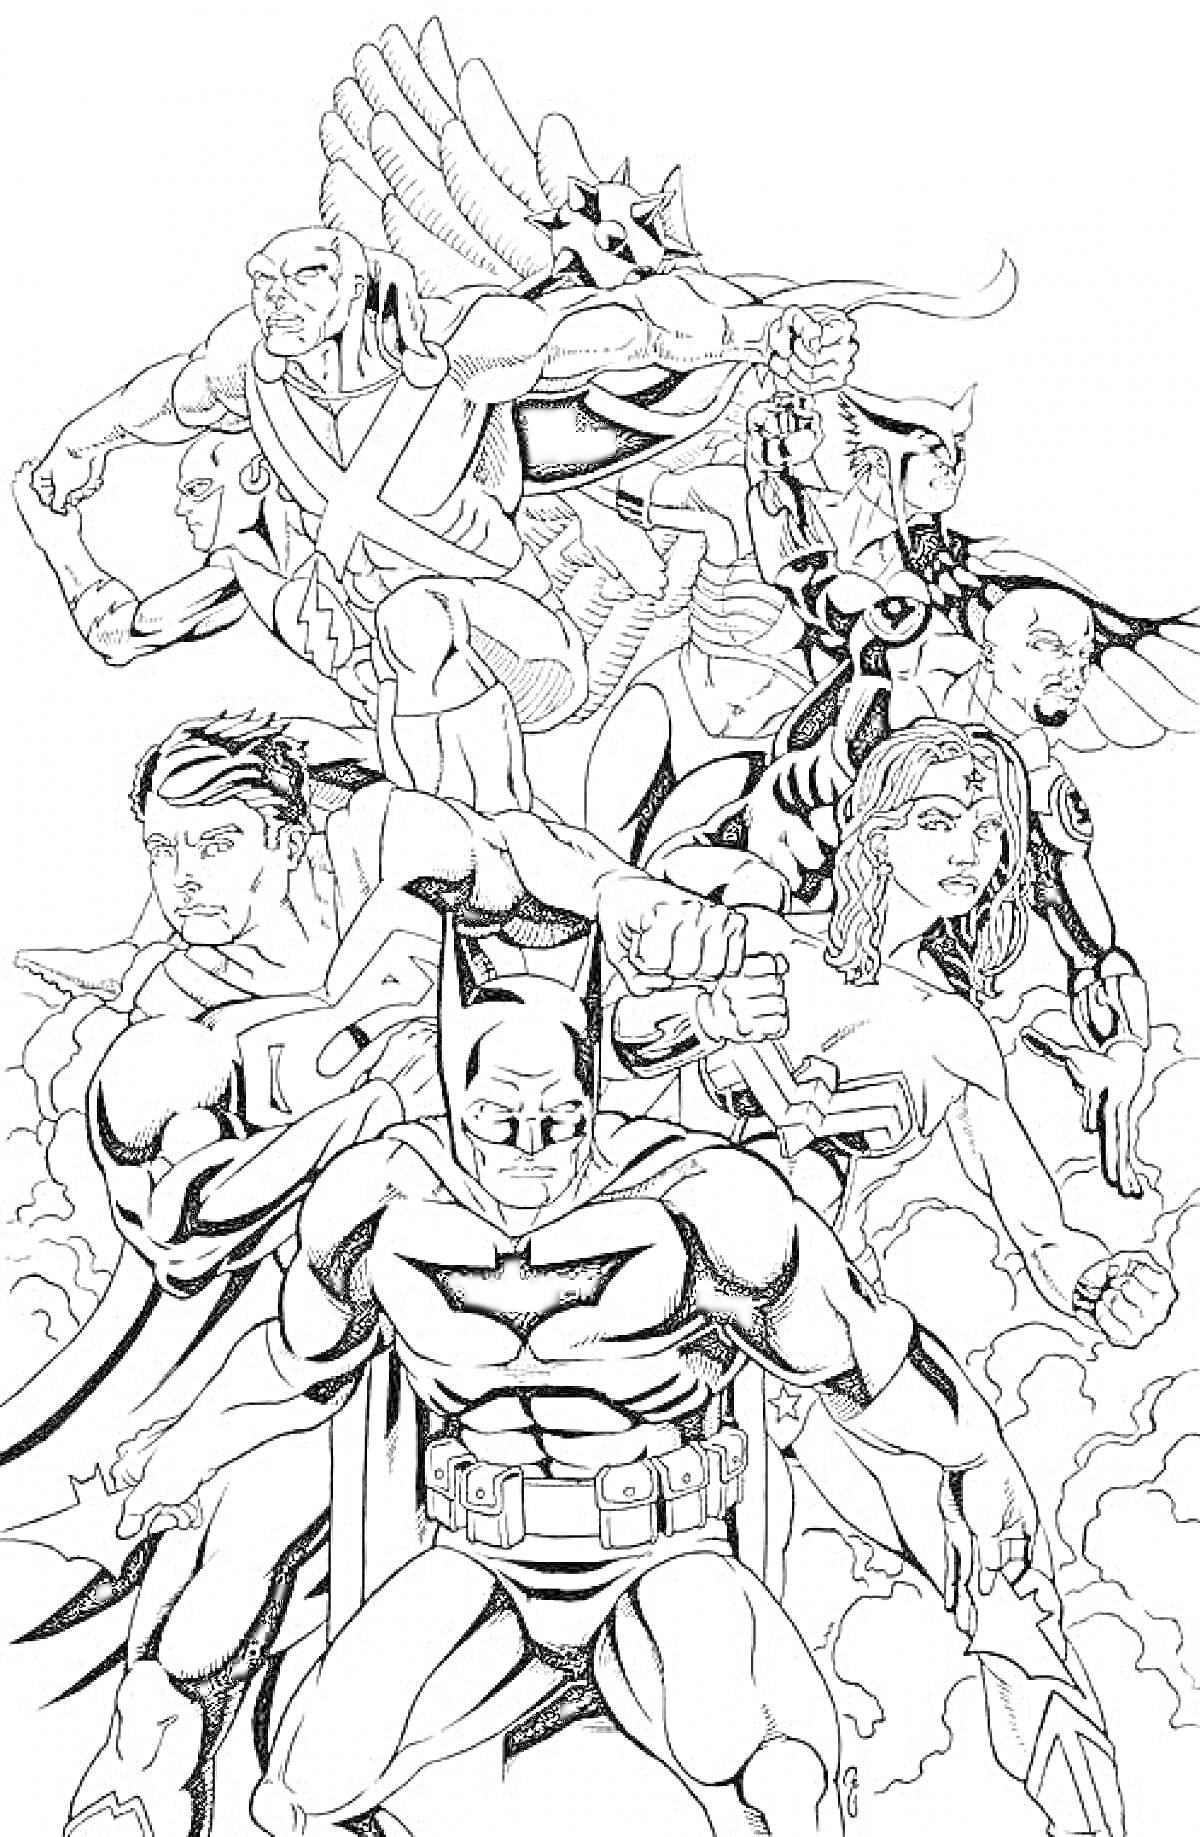 Герои Лиги Справедливости: Бэтмен, Супермен, Чудо-женщина, Зеленый Фонарь, Флэш, Человек-ястреб, Марсианский охотник, Черная канарейка